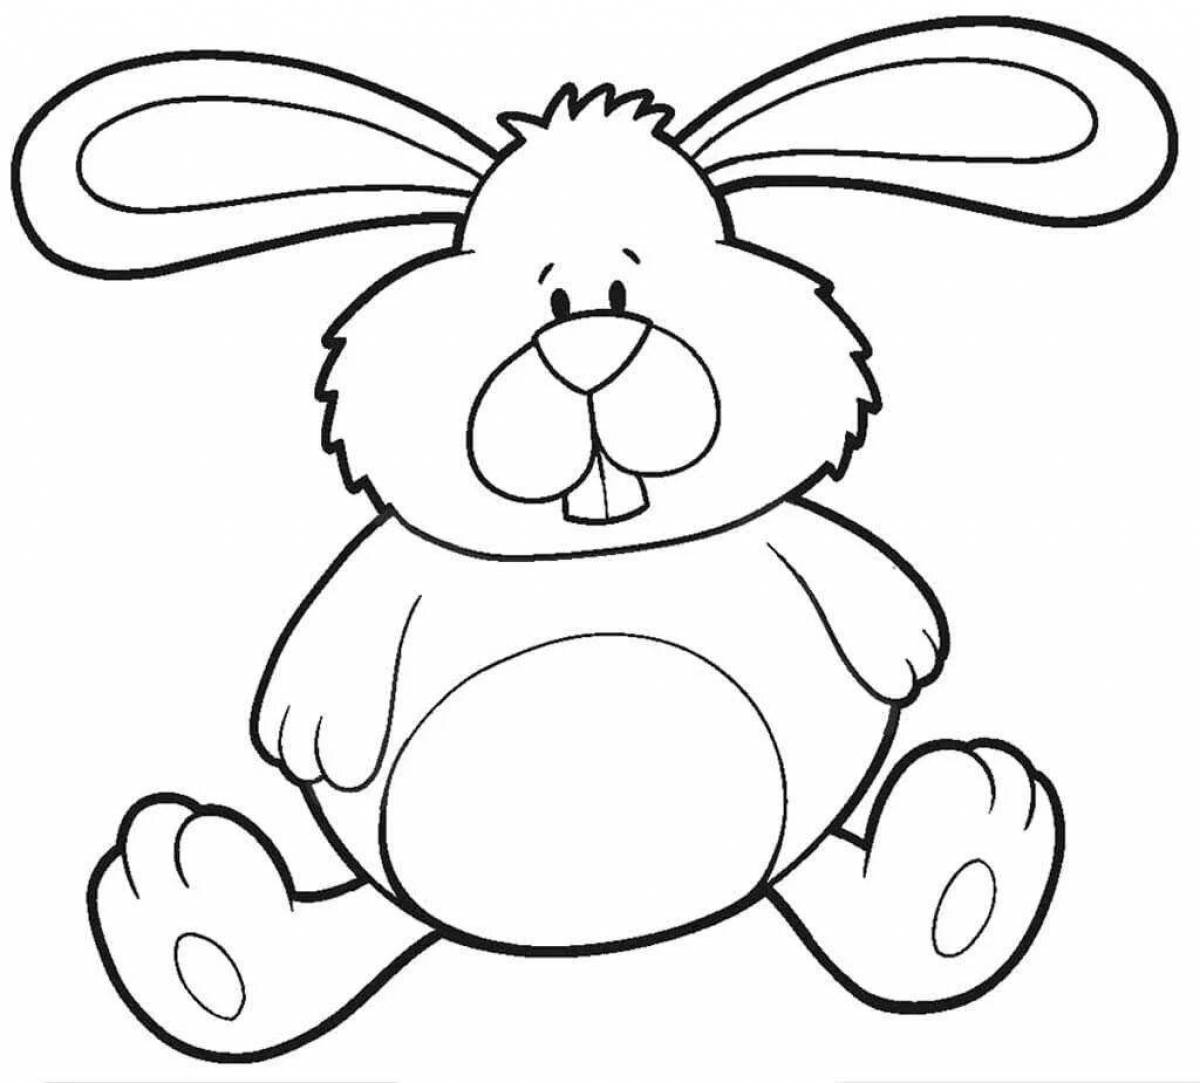 Картинки для раскрашивания для детей. Раскраска зайчик. Заяц раскраска для детей. Раскраска. Игрушки. Зайчик раскраска для малышей.